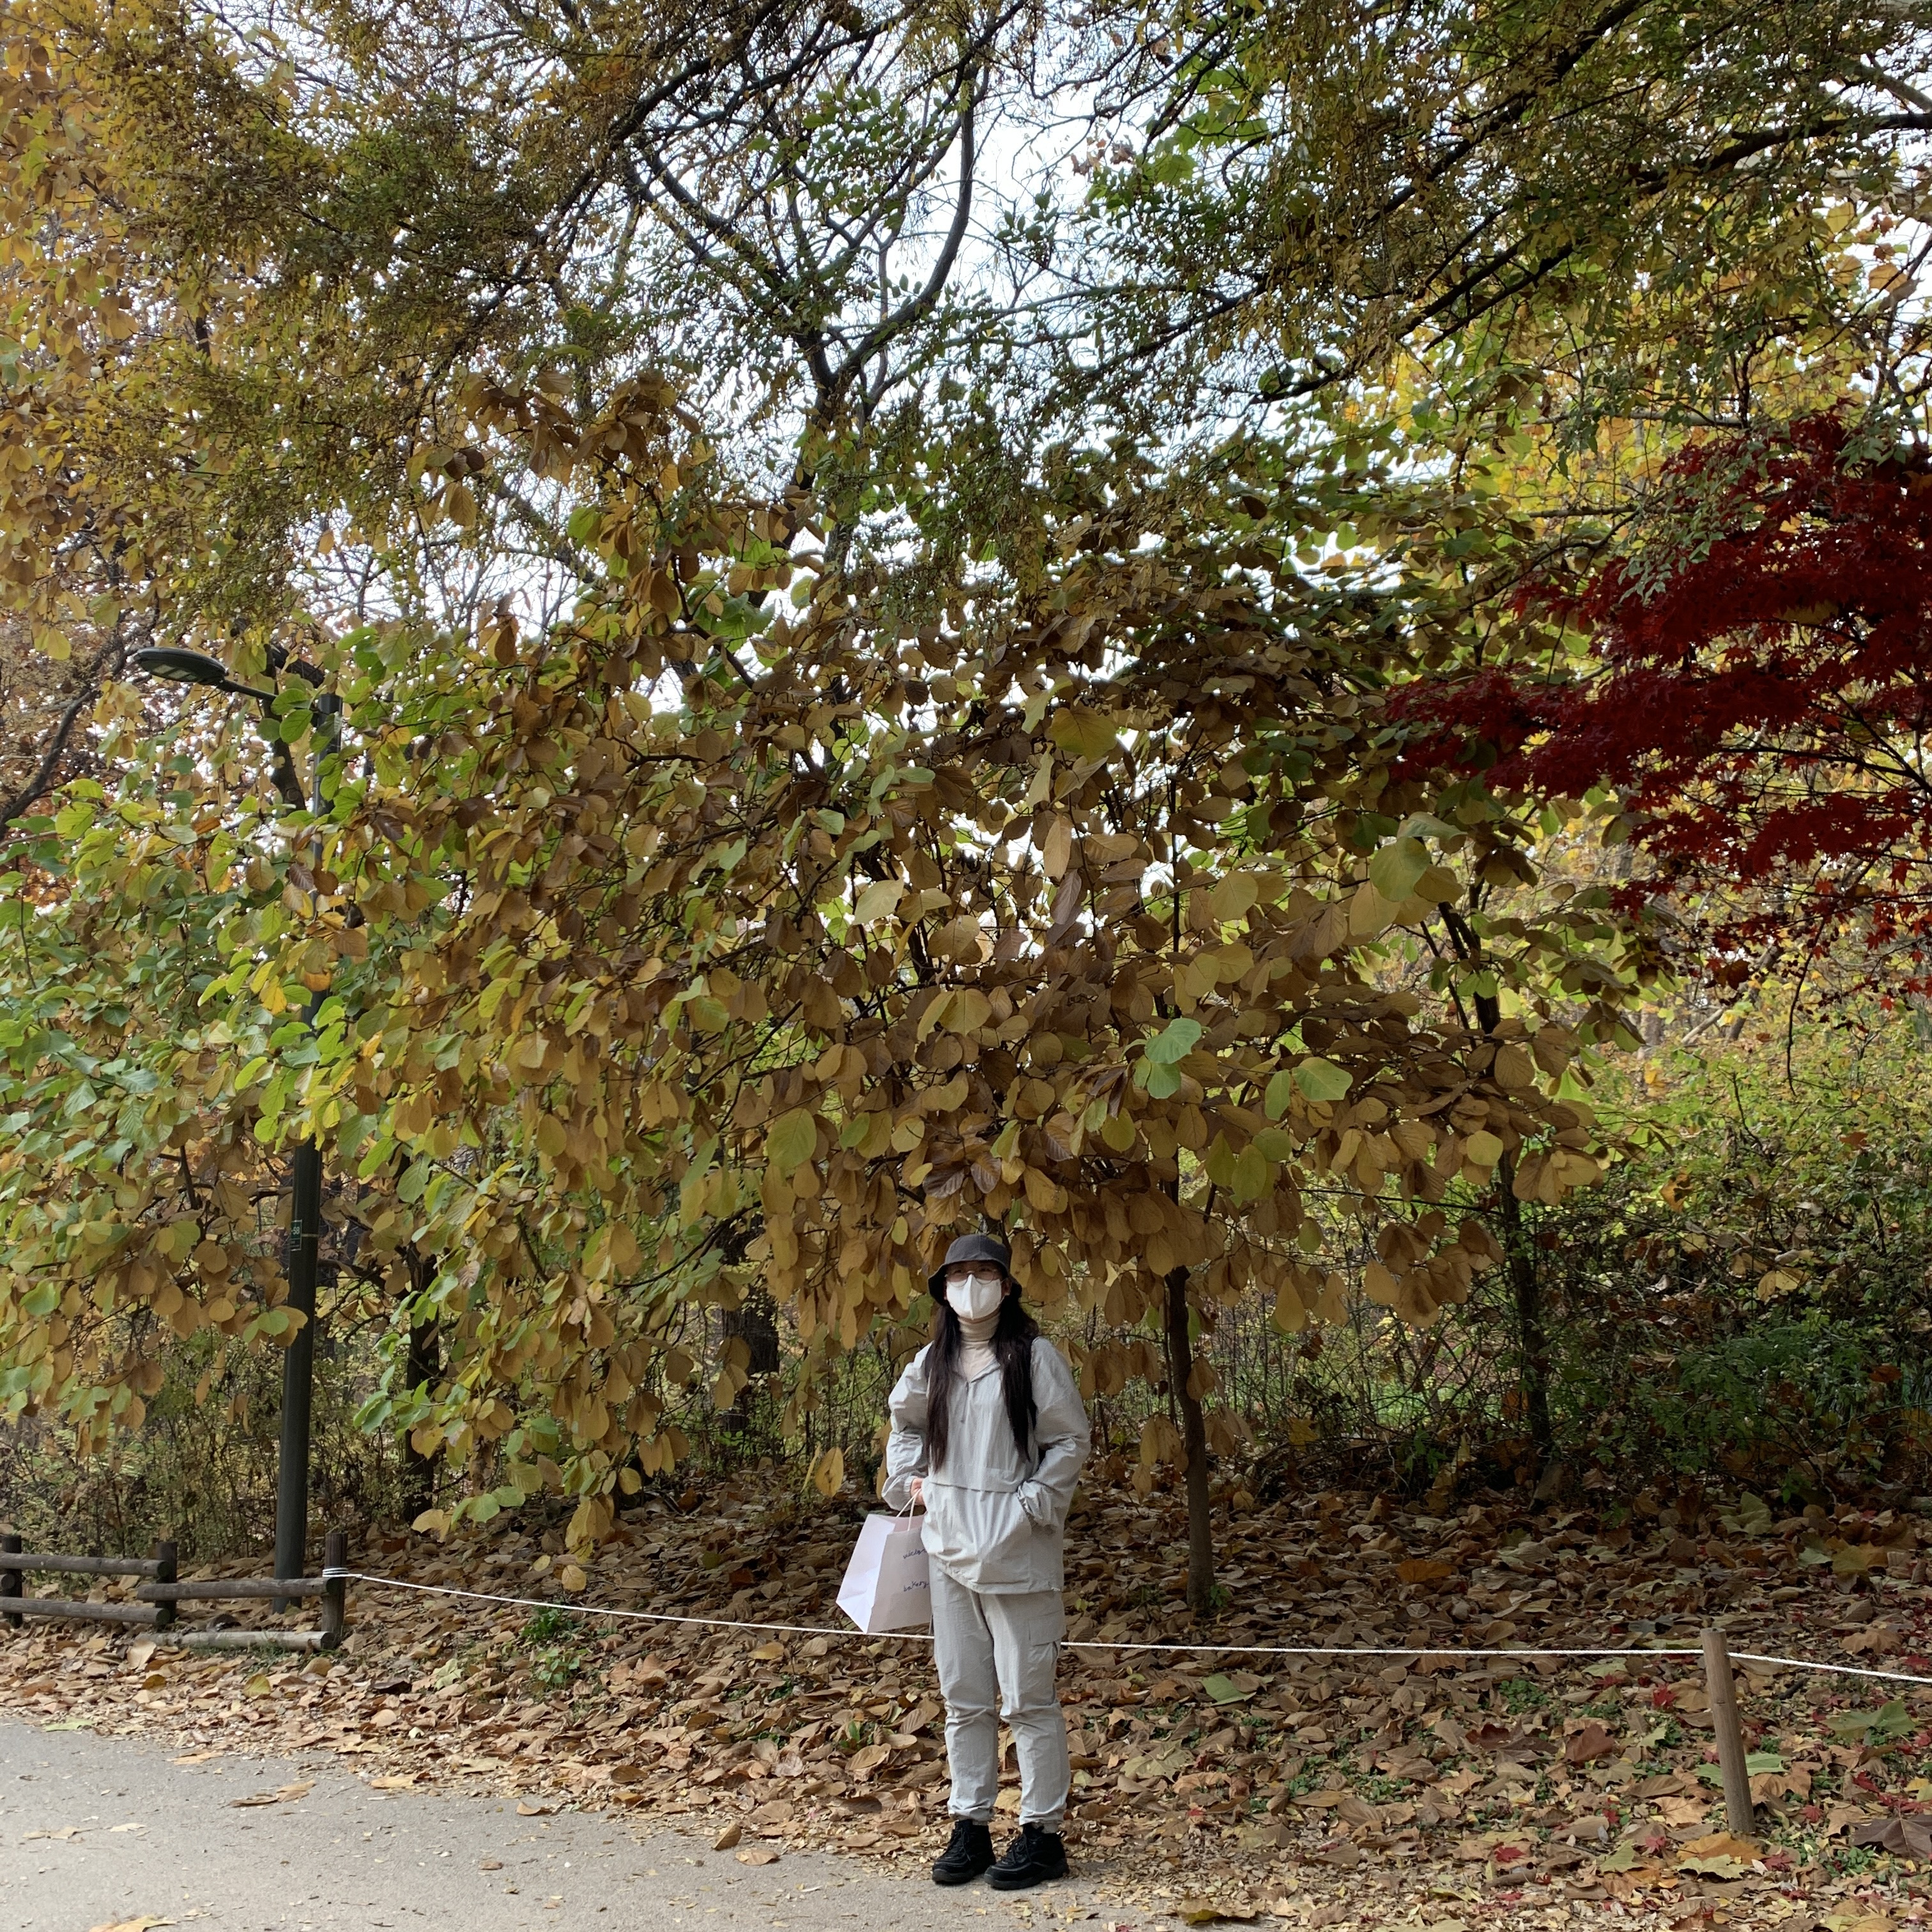 알록달록한 낙엽들 사이에서 사진한장